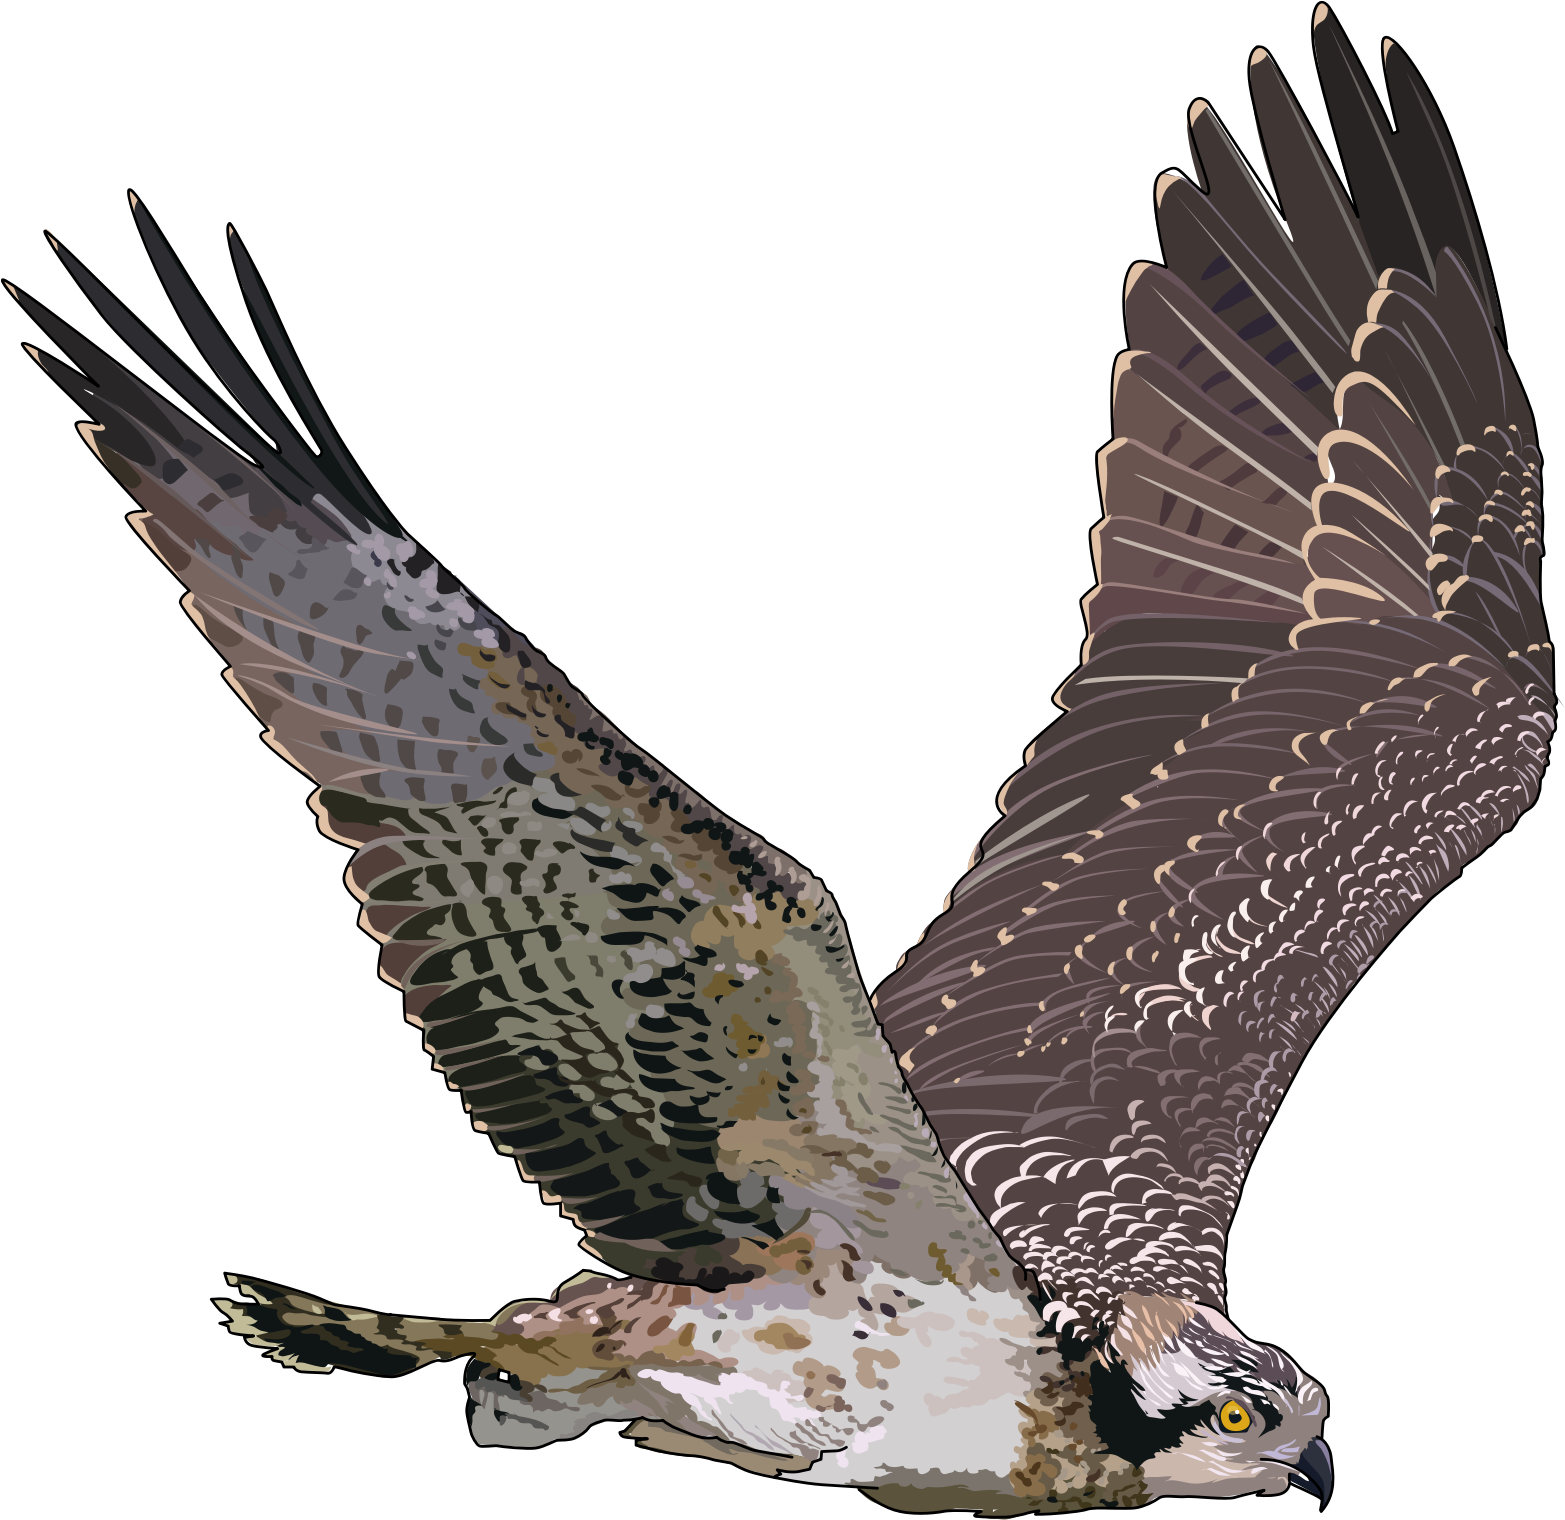 falcon clipart transparent